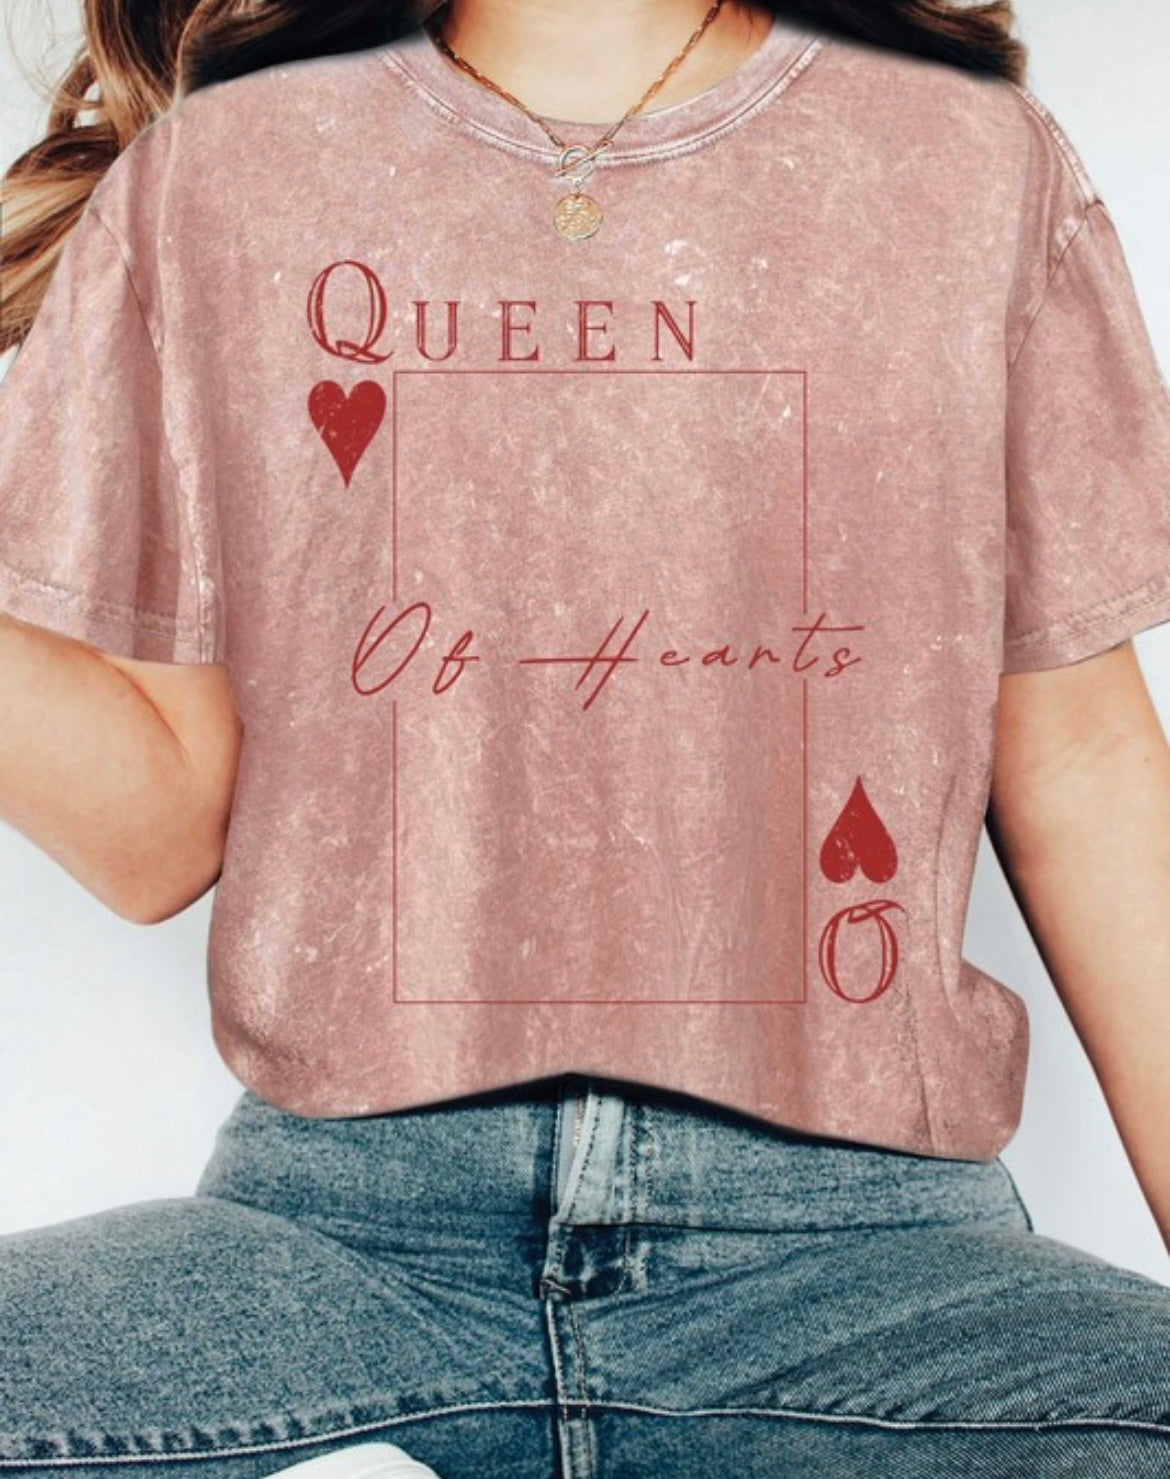 The Queen of Hearts Tee